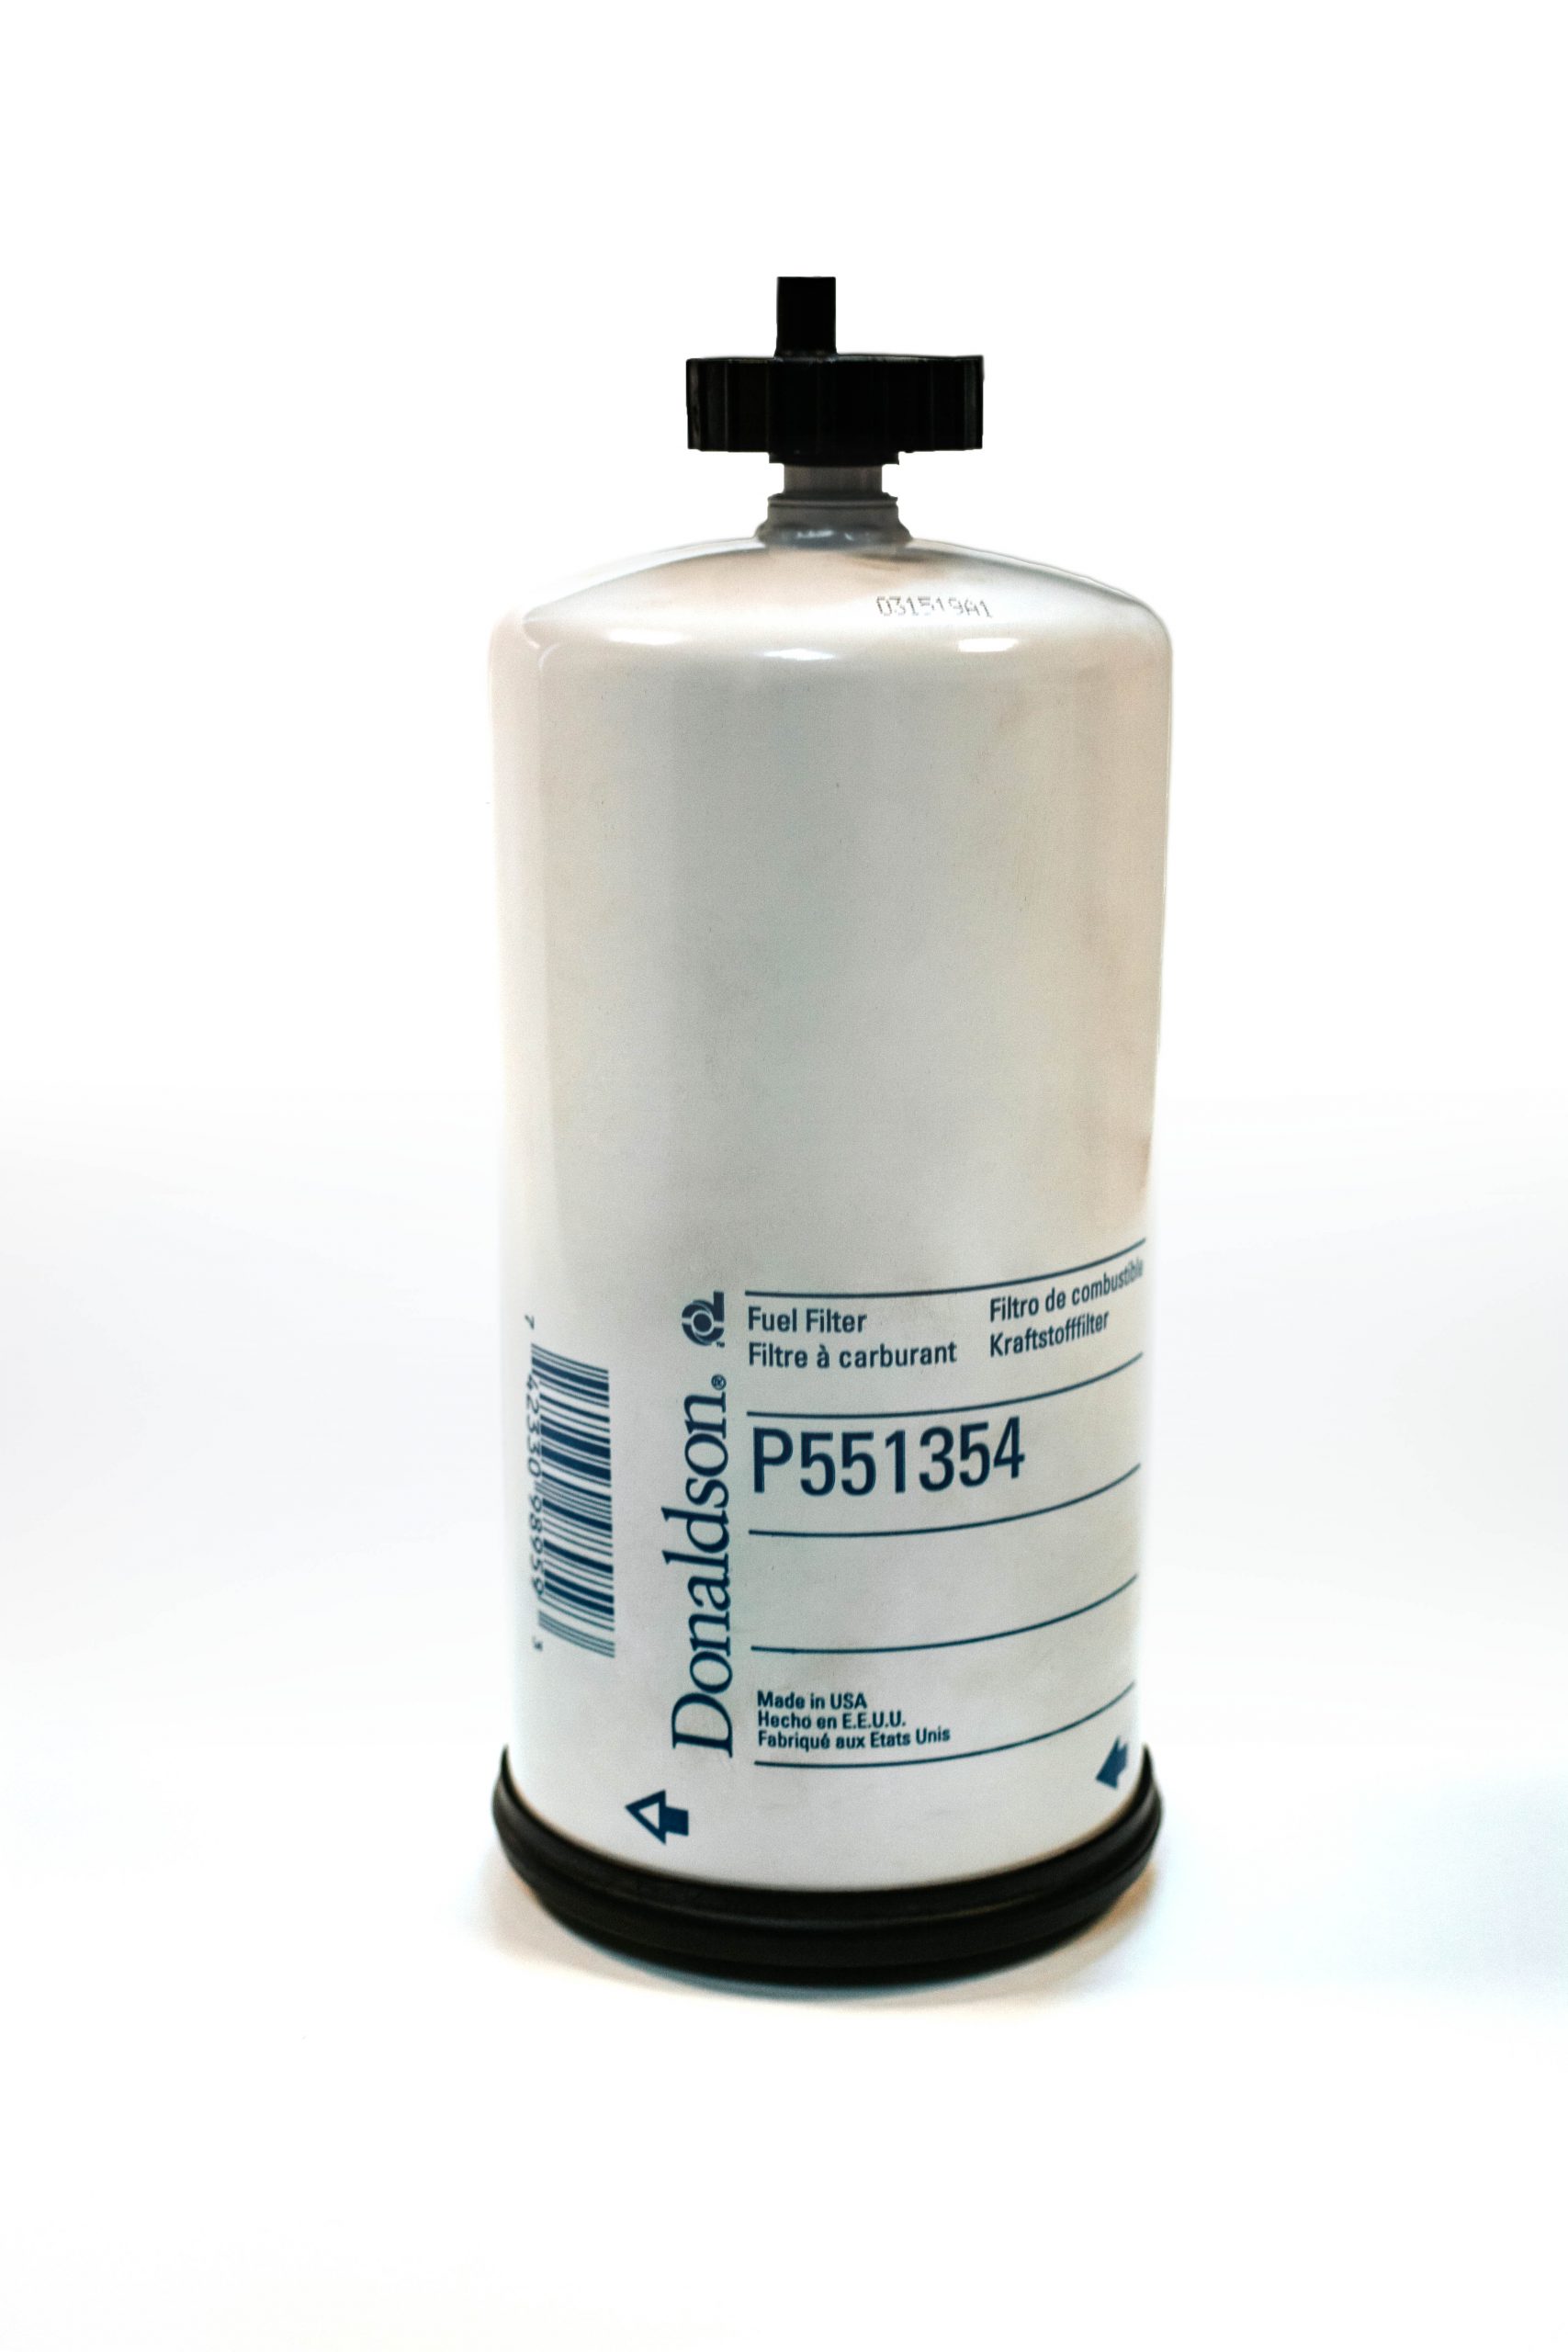 Filtro de combustible P551354 de Donaldson